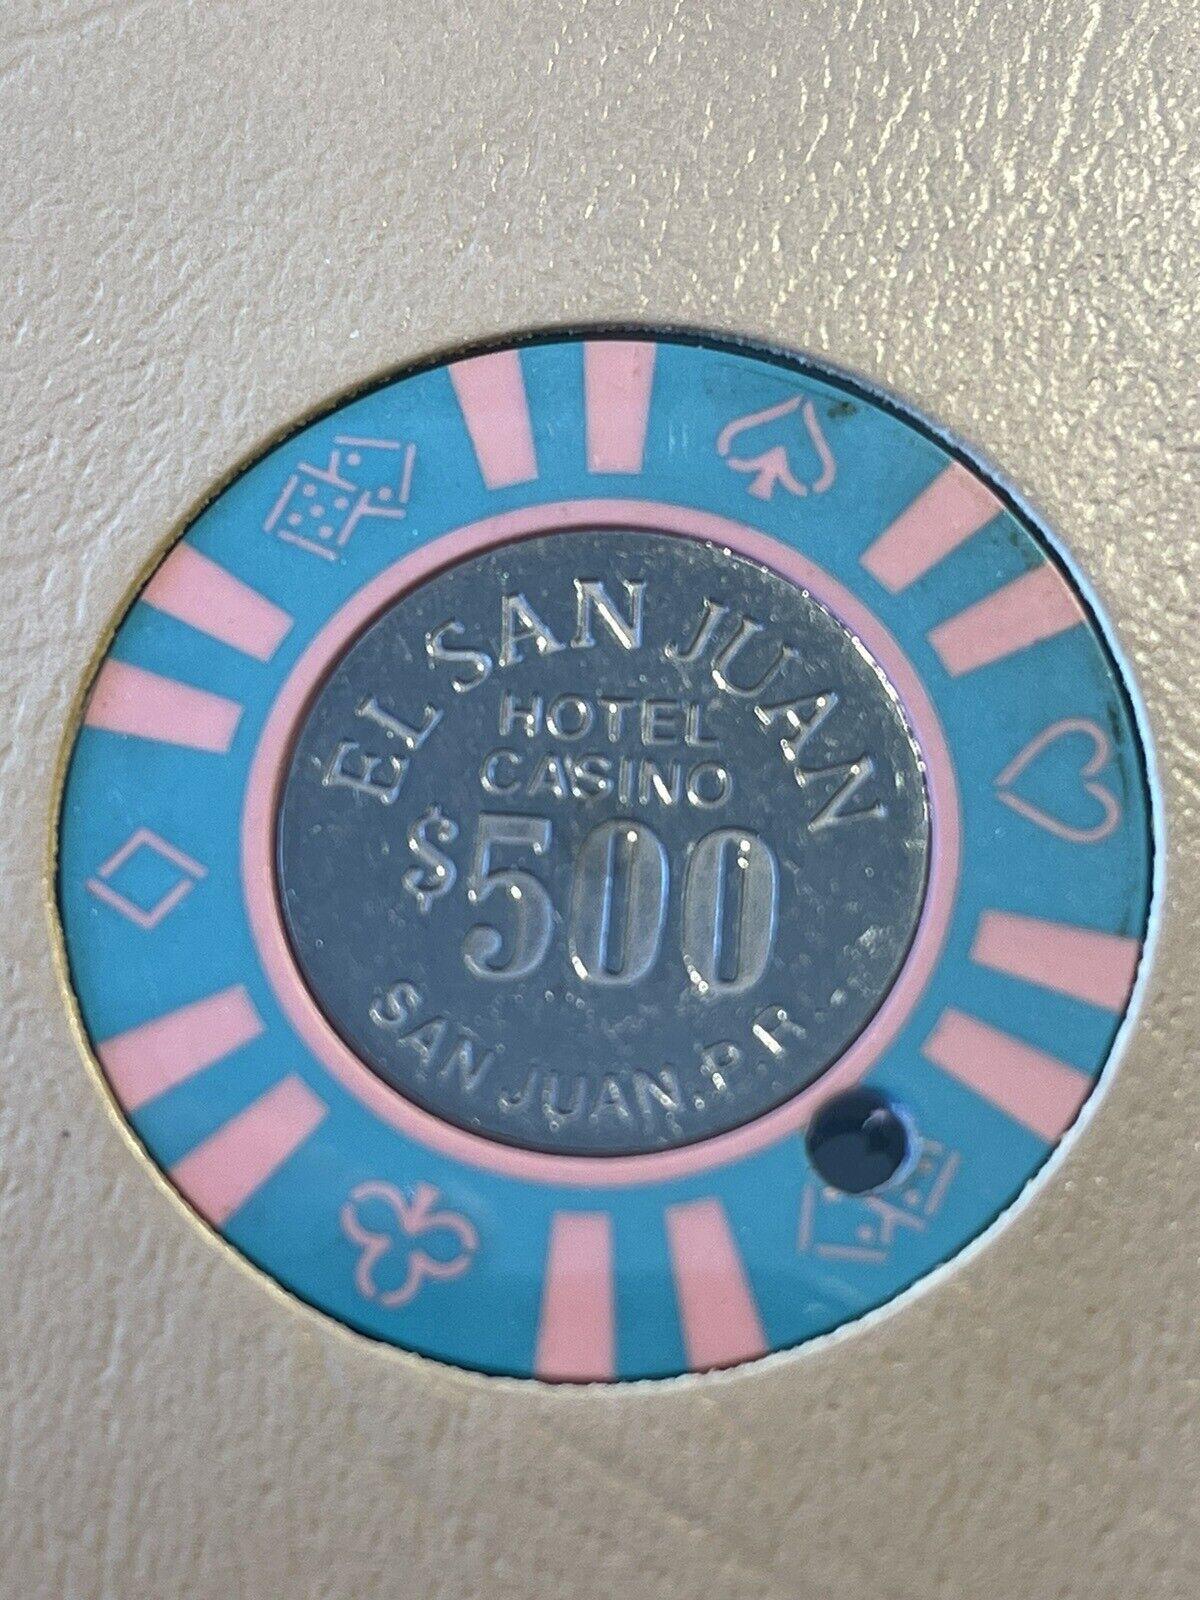 $500 El San Juan Puerto Rico Casino Chip ESJ-500a ***Rare***